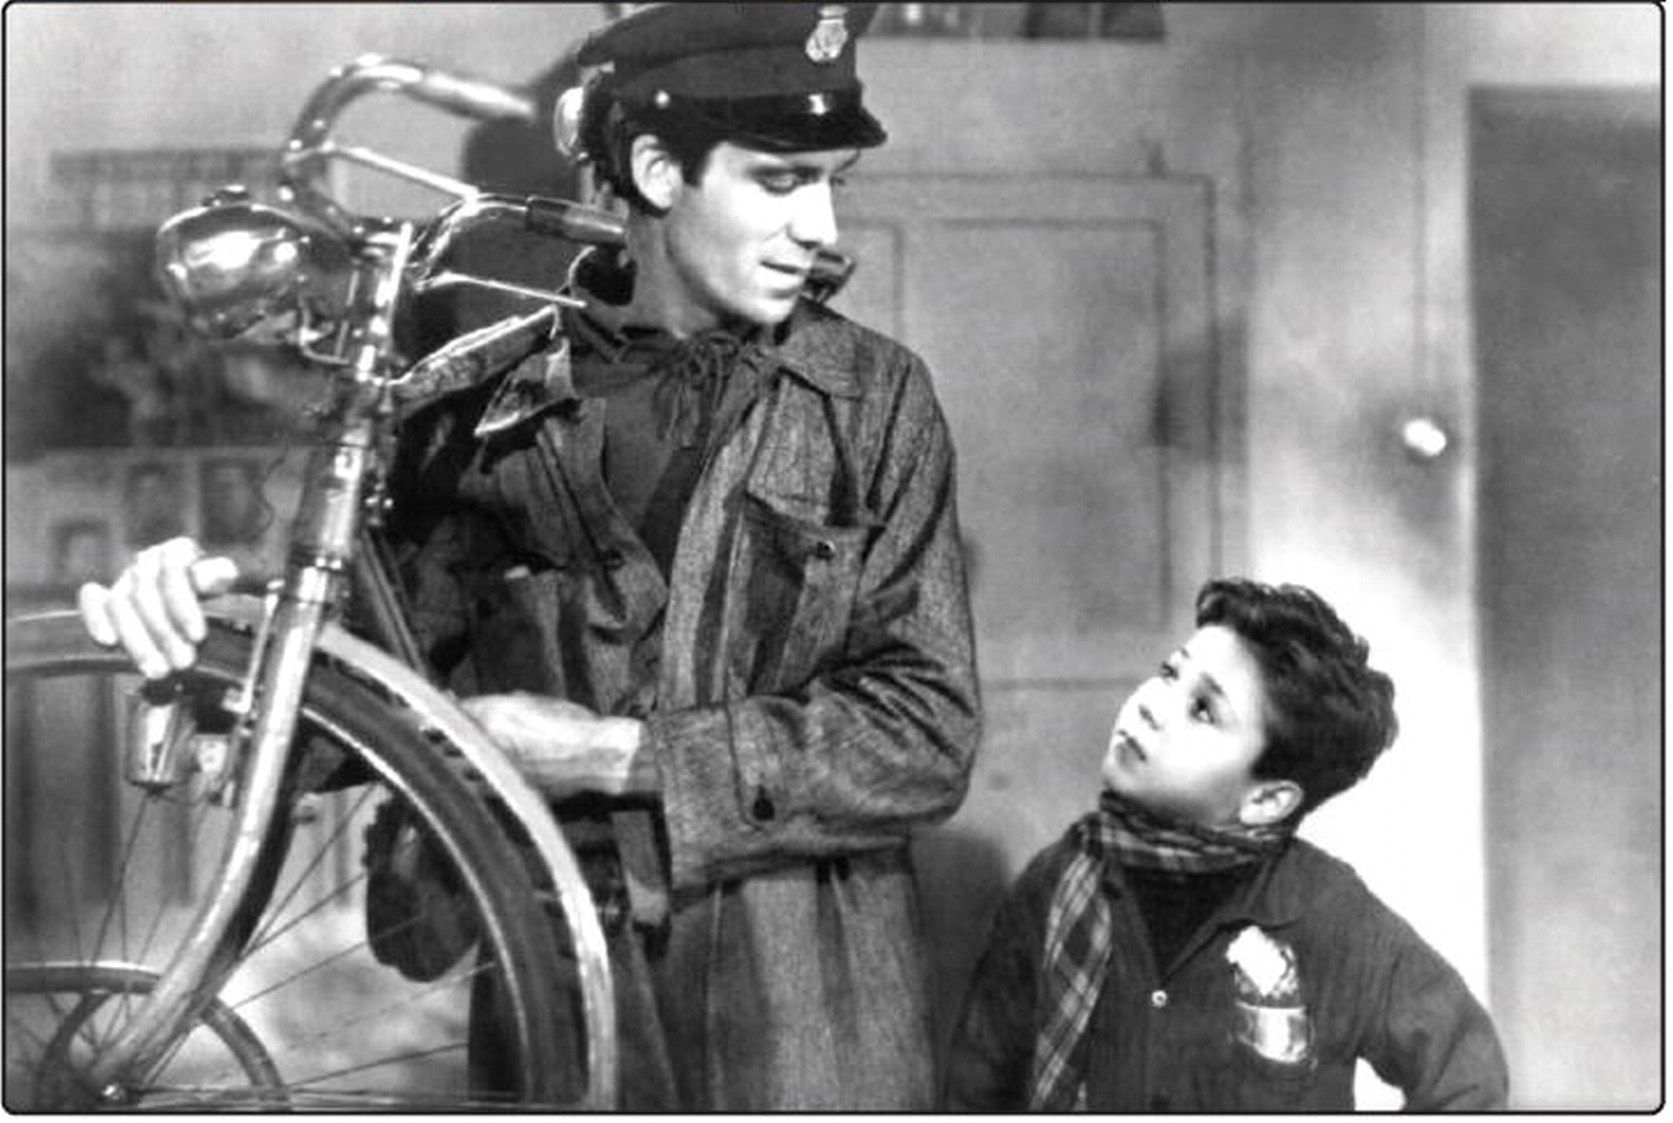 UN’IMMAGINE DI “LADRI DI BICICLETTE”, IL FILM DEL 1948 DIRETTO DA VITTORIO DE SICA